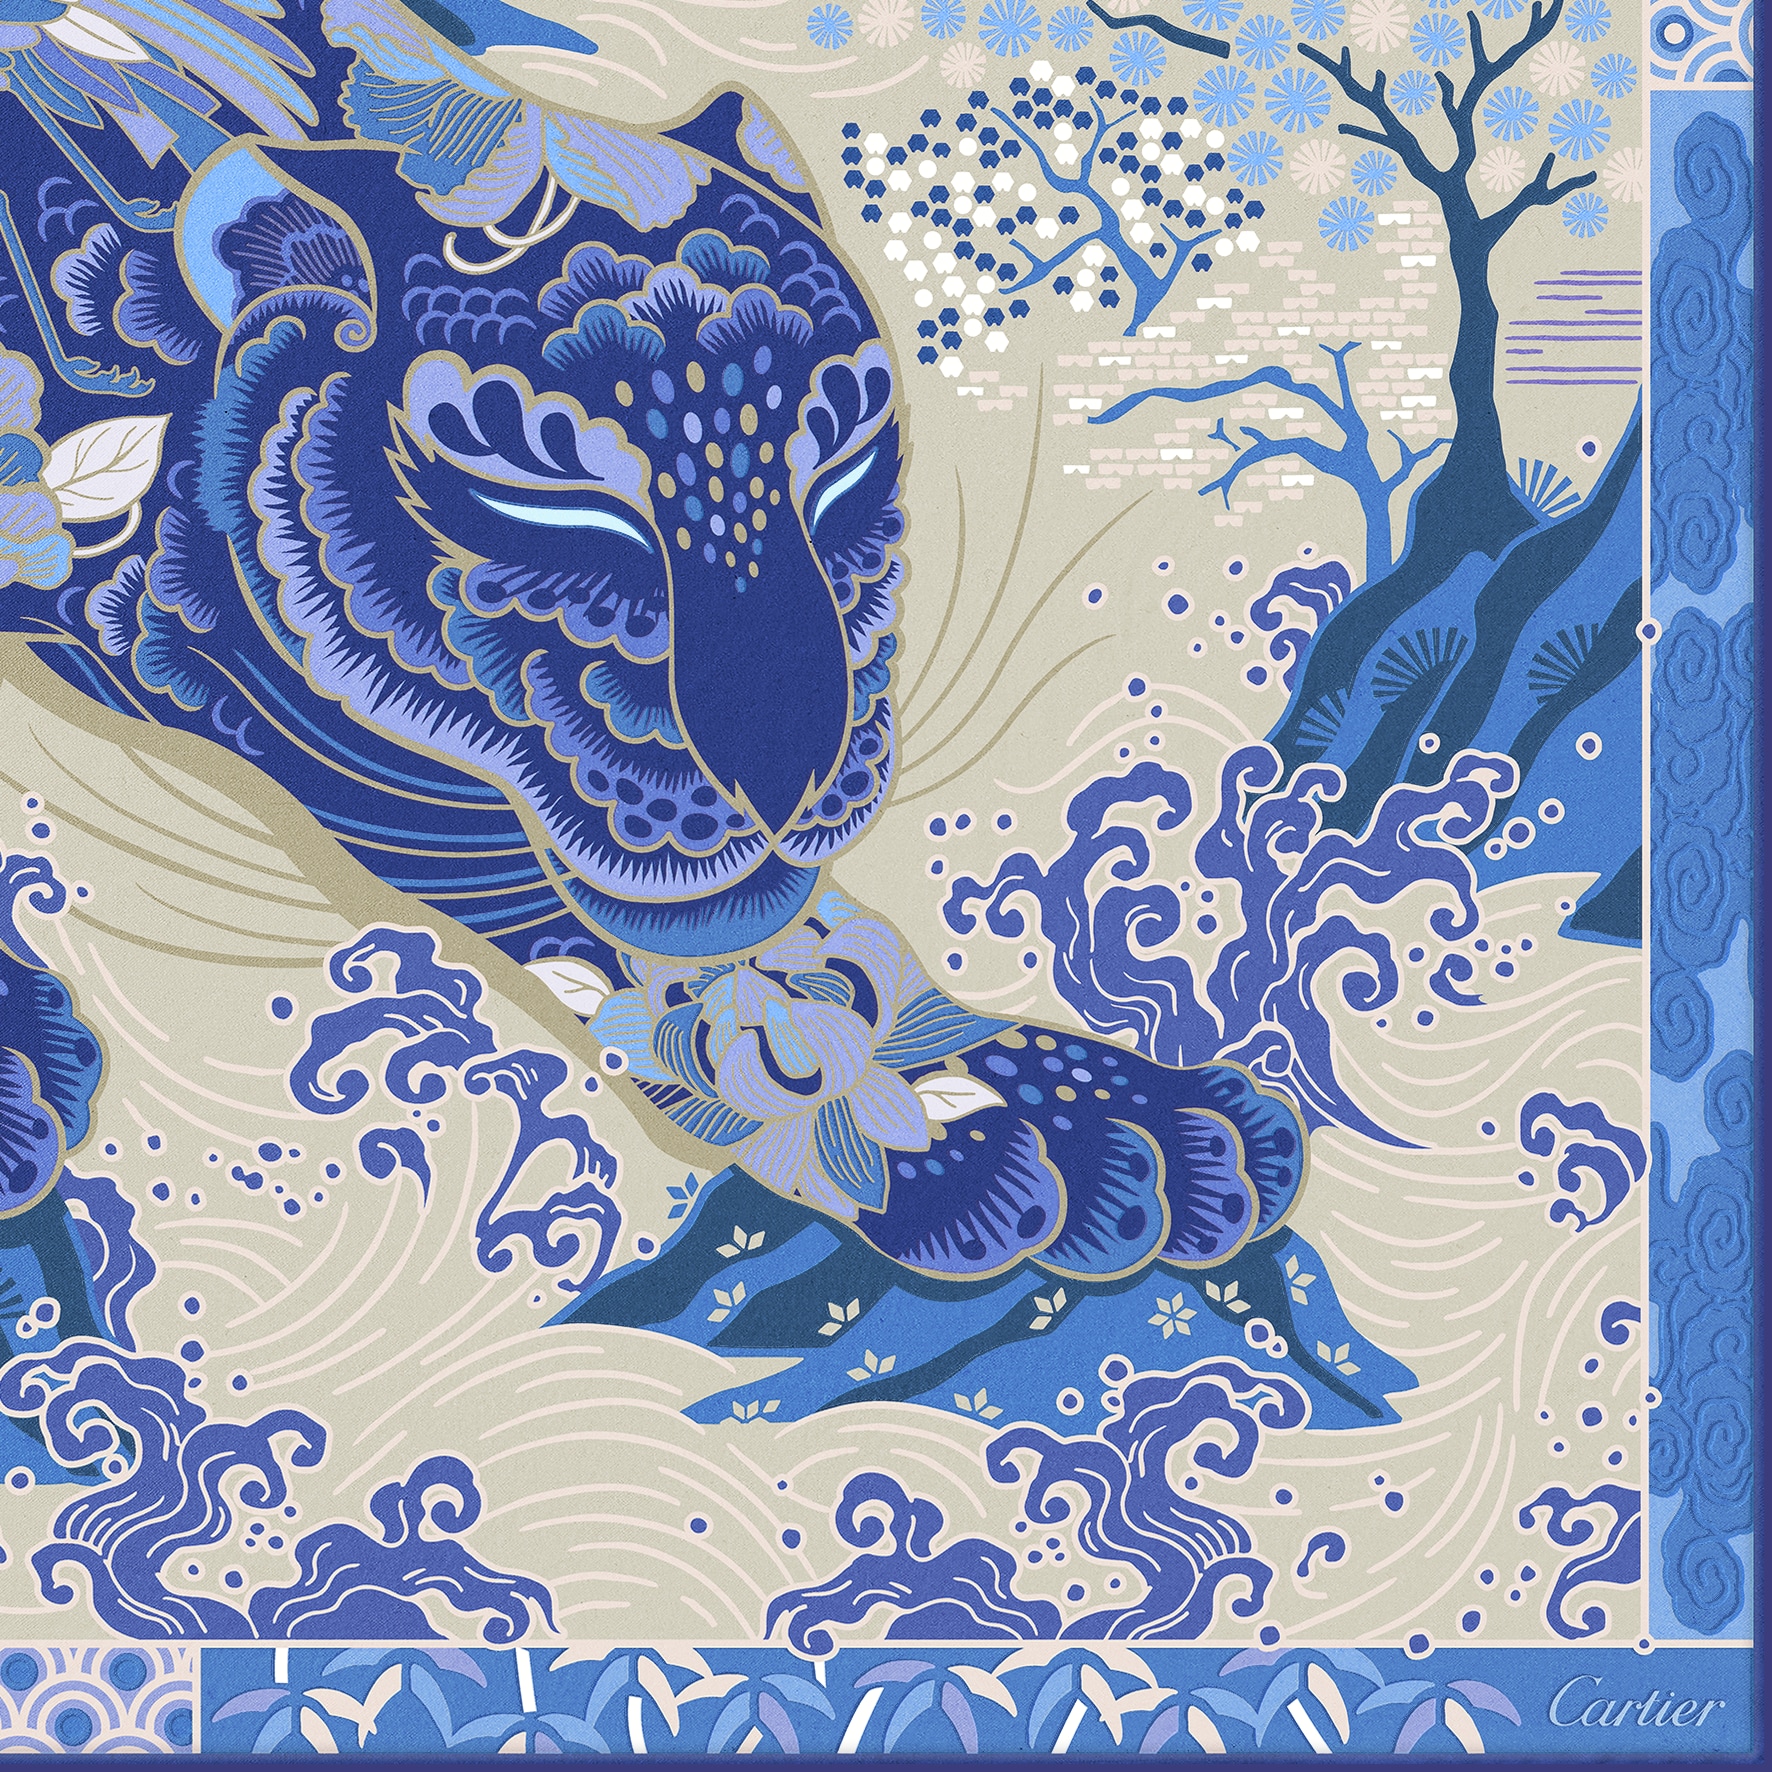 美洲豹圖案方巾藍色及米色斜紋真絲